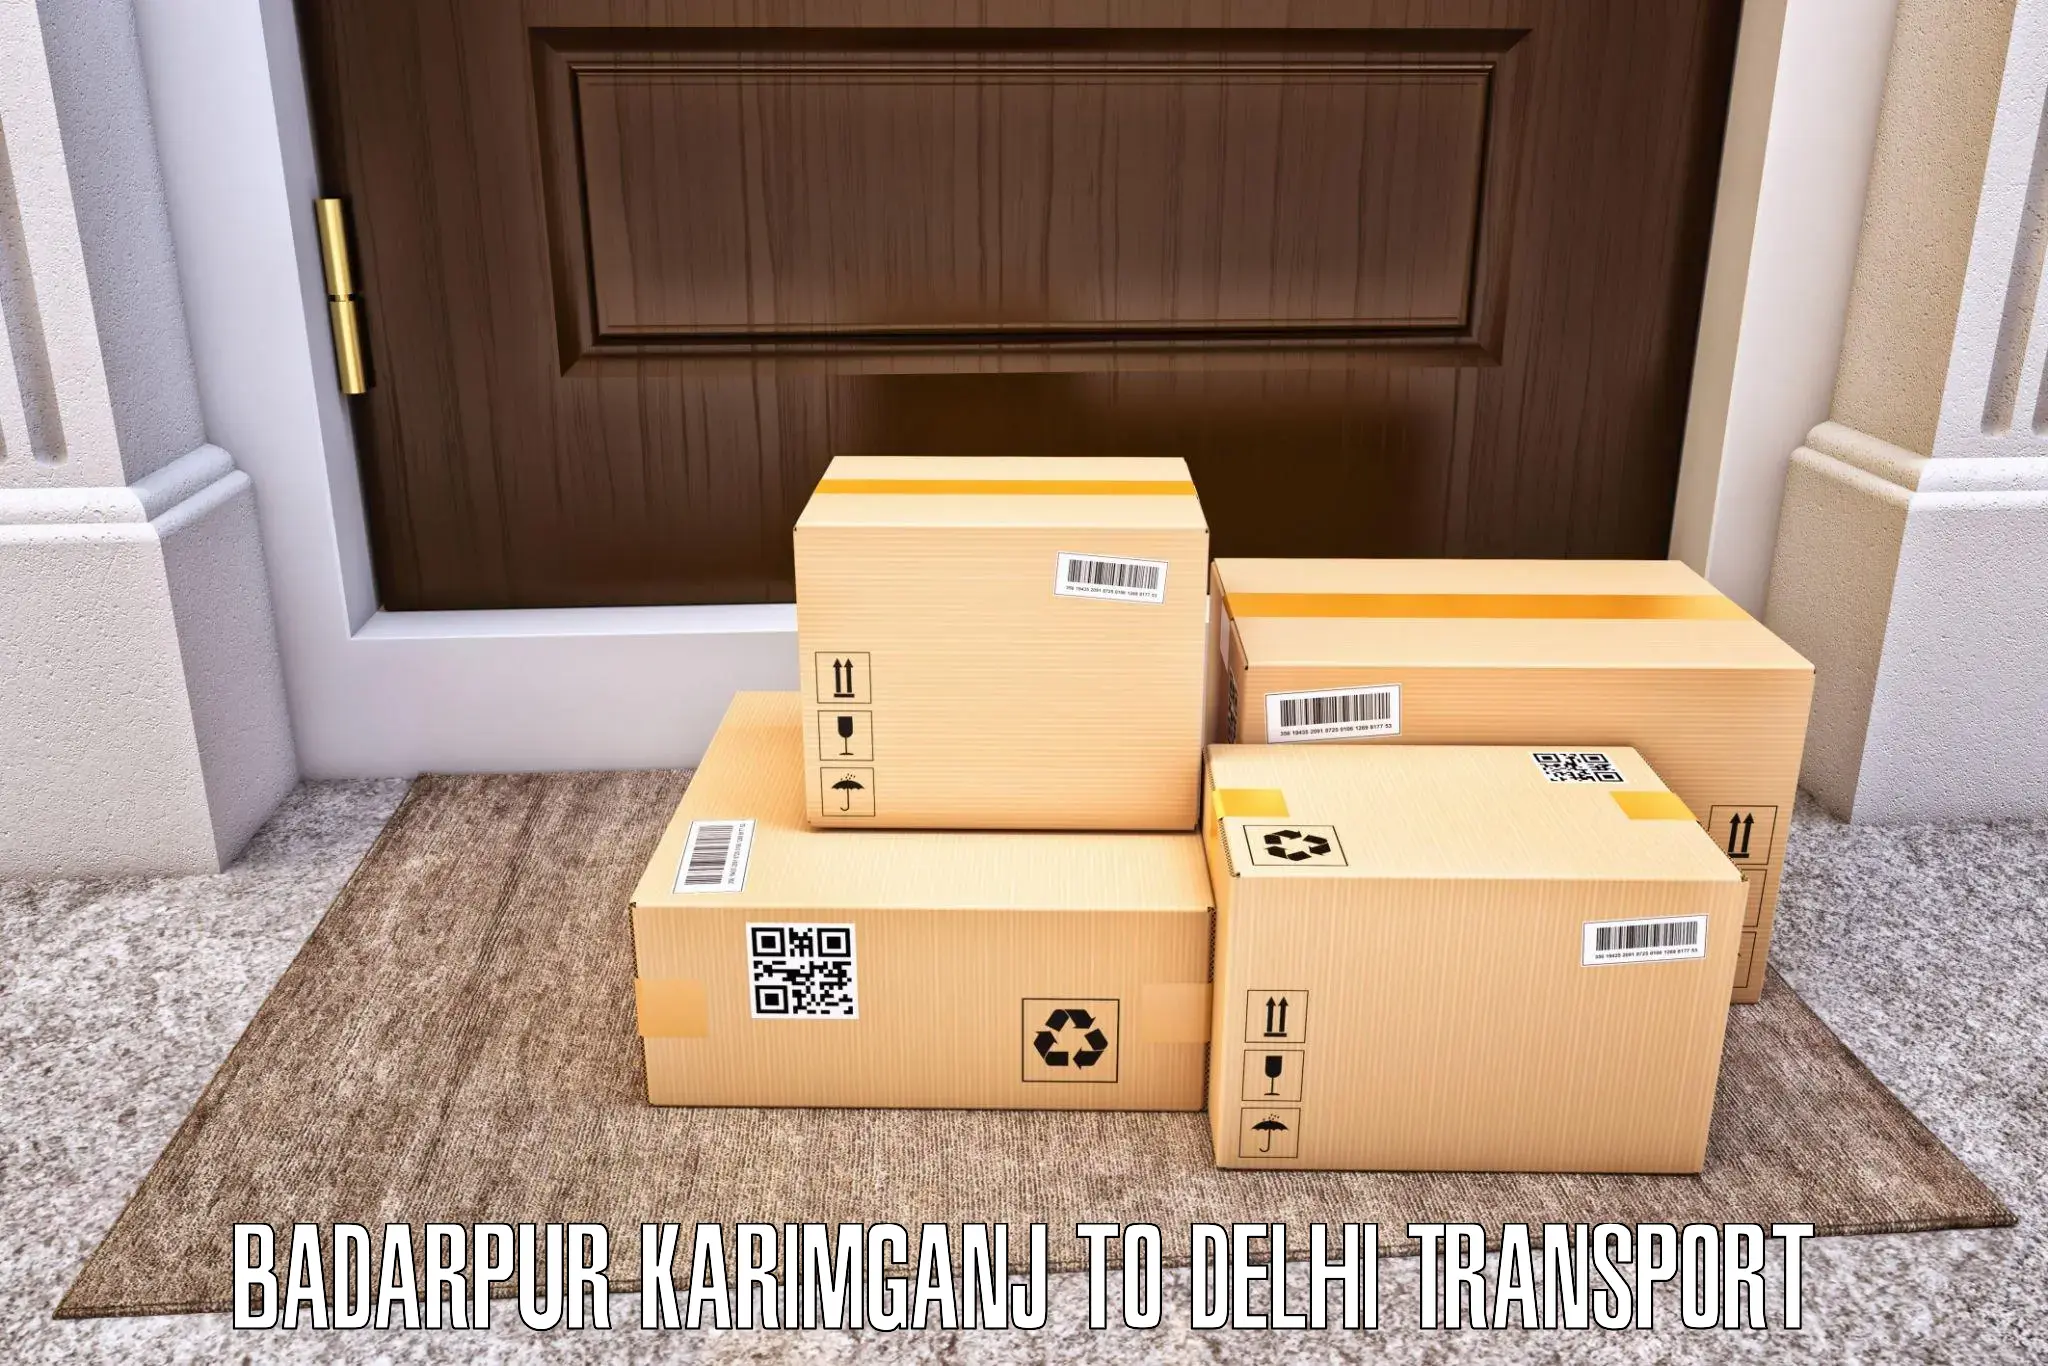 Parcel transport services Badarpur Karimganj to IIT Delhi